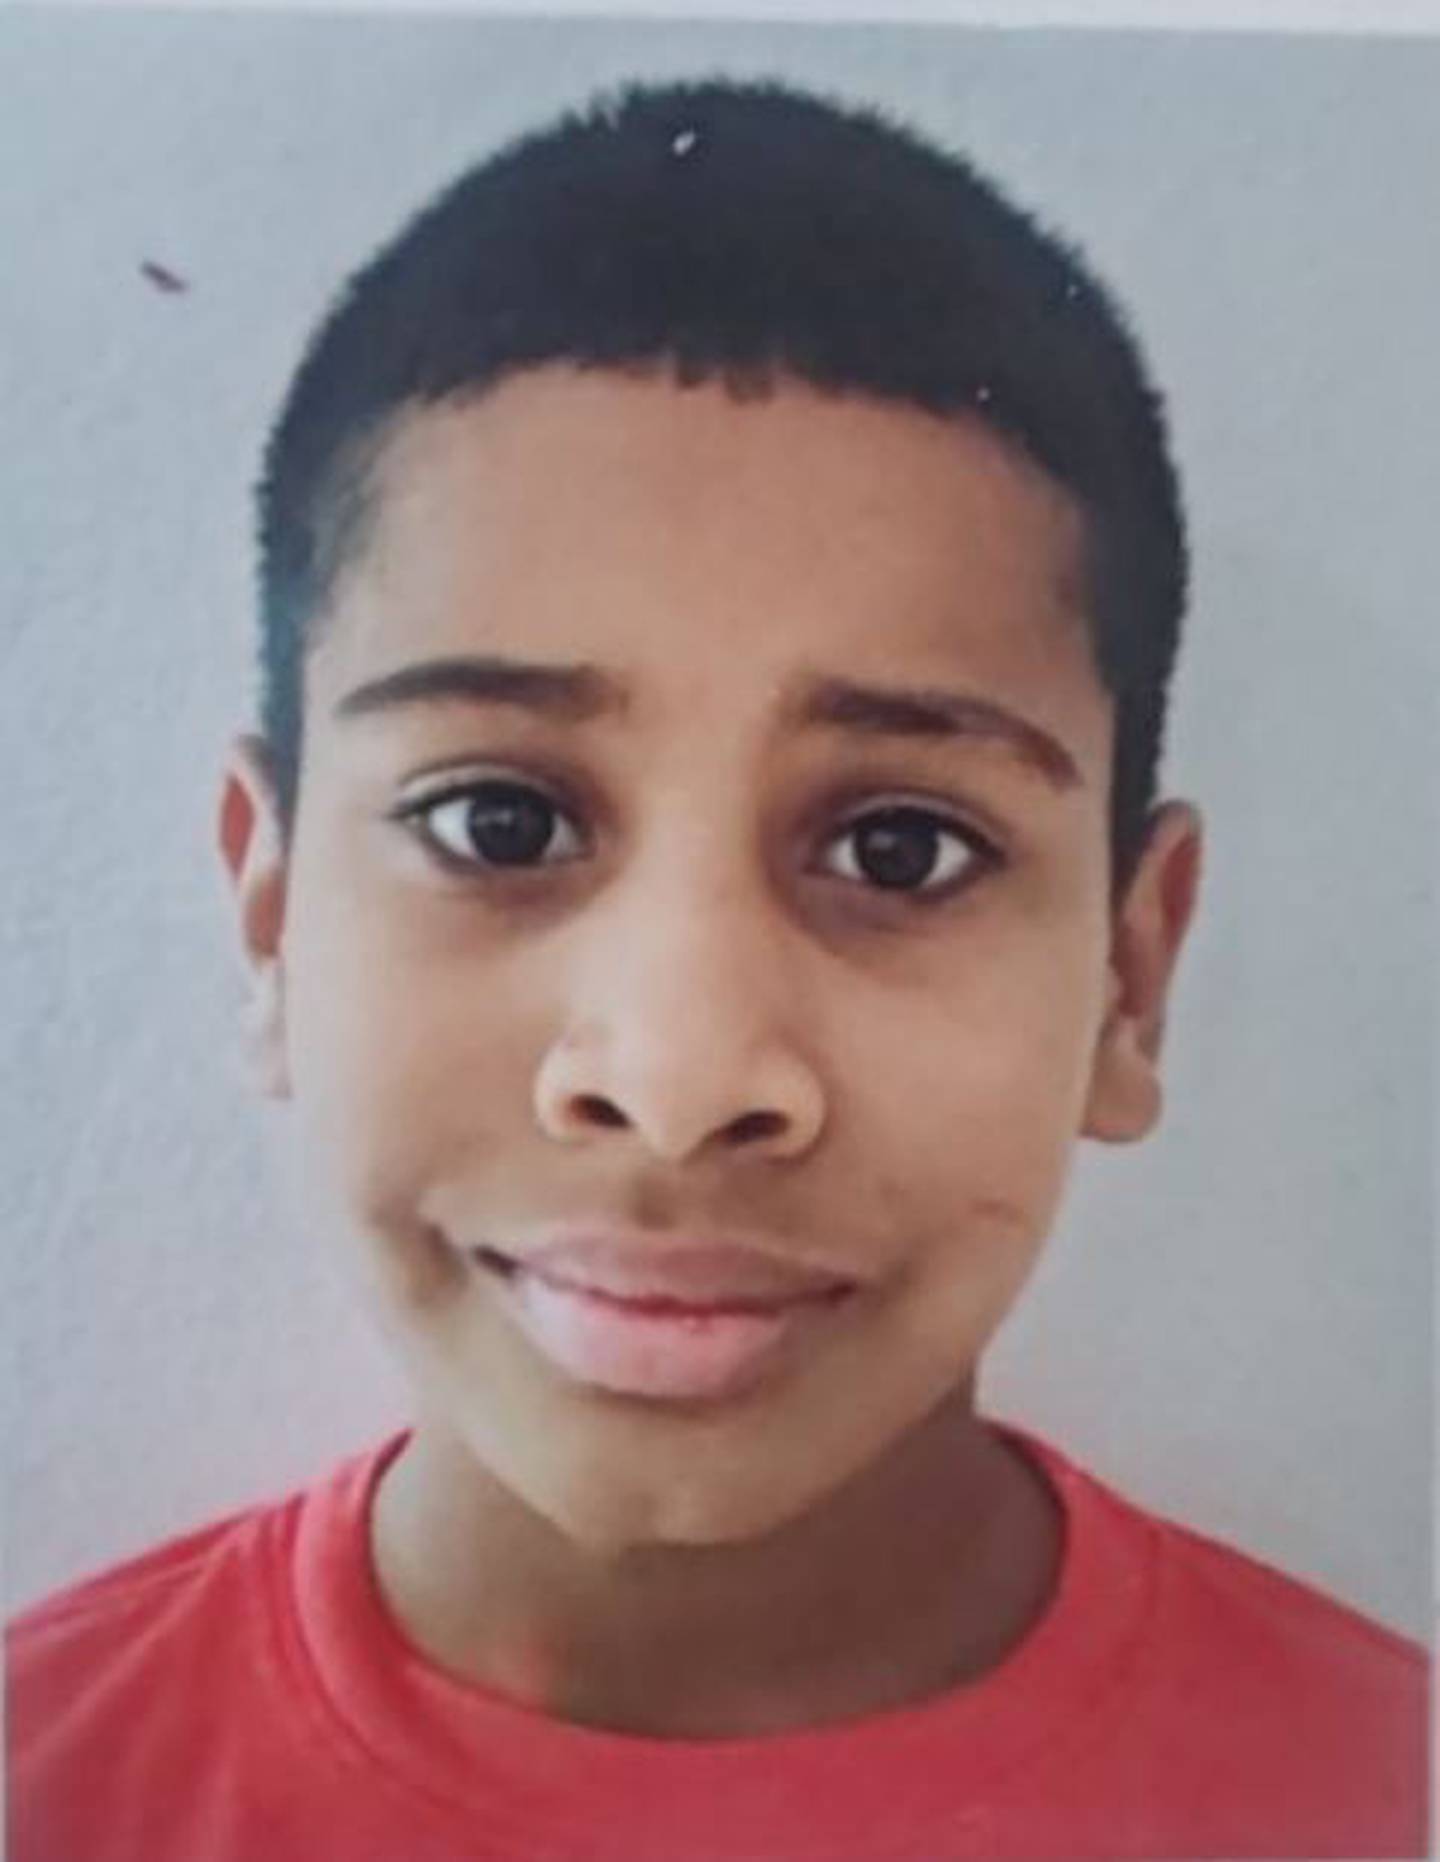 DAVID JOSUÉ ORTEGA CARRION de 12 años de edad, quien fue reportado como desaparecido el 22 de abril de 2024, visto por última vez en Roxana, Pococí, Limón, el 21 de abril del 2024.